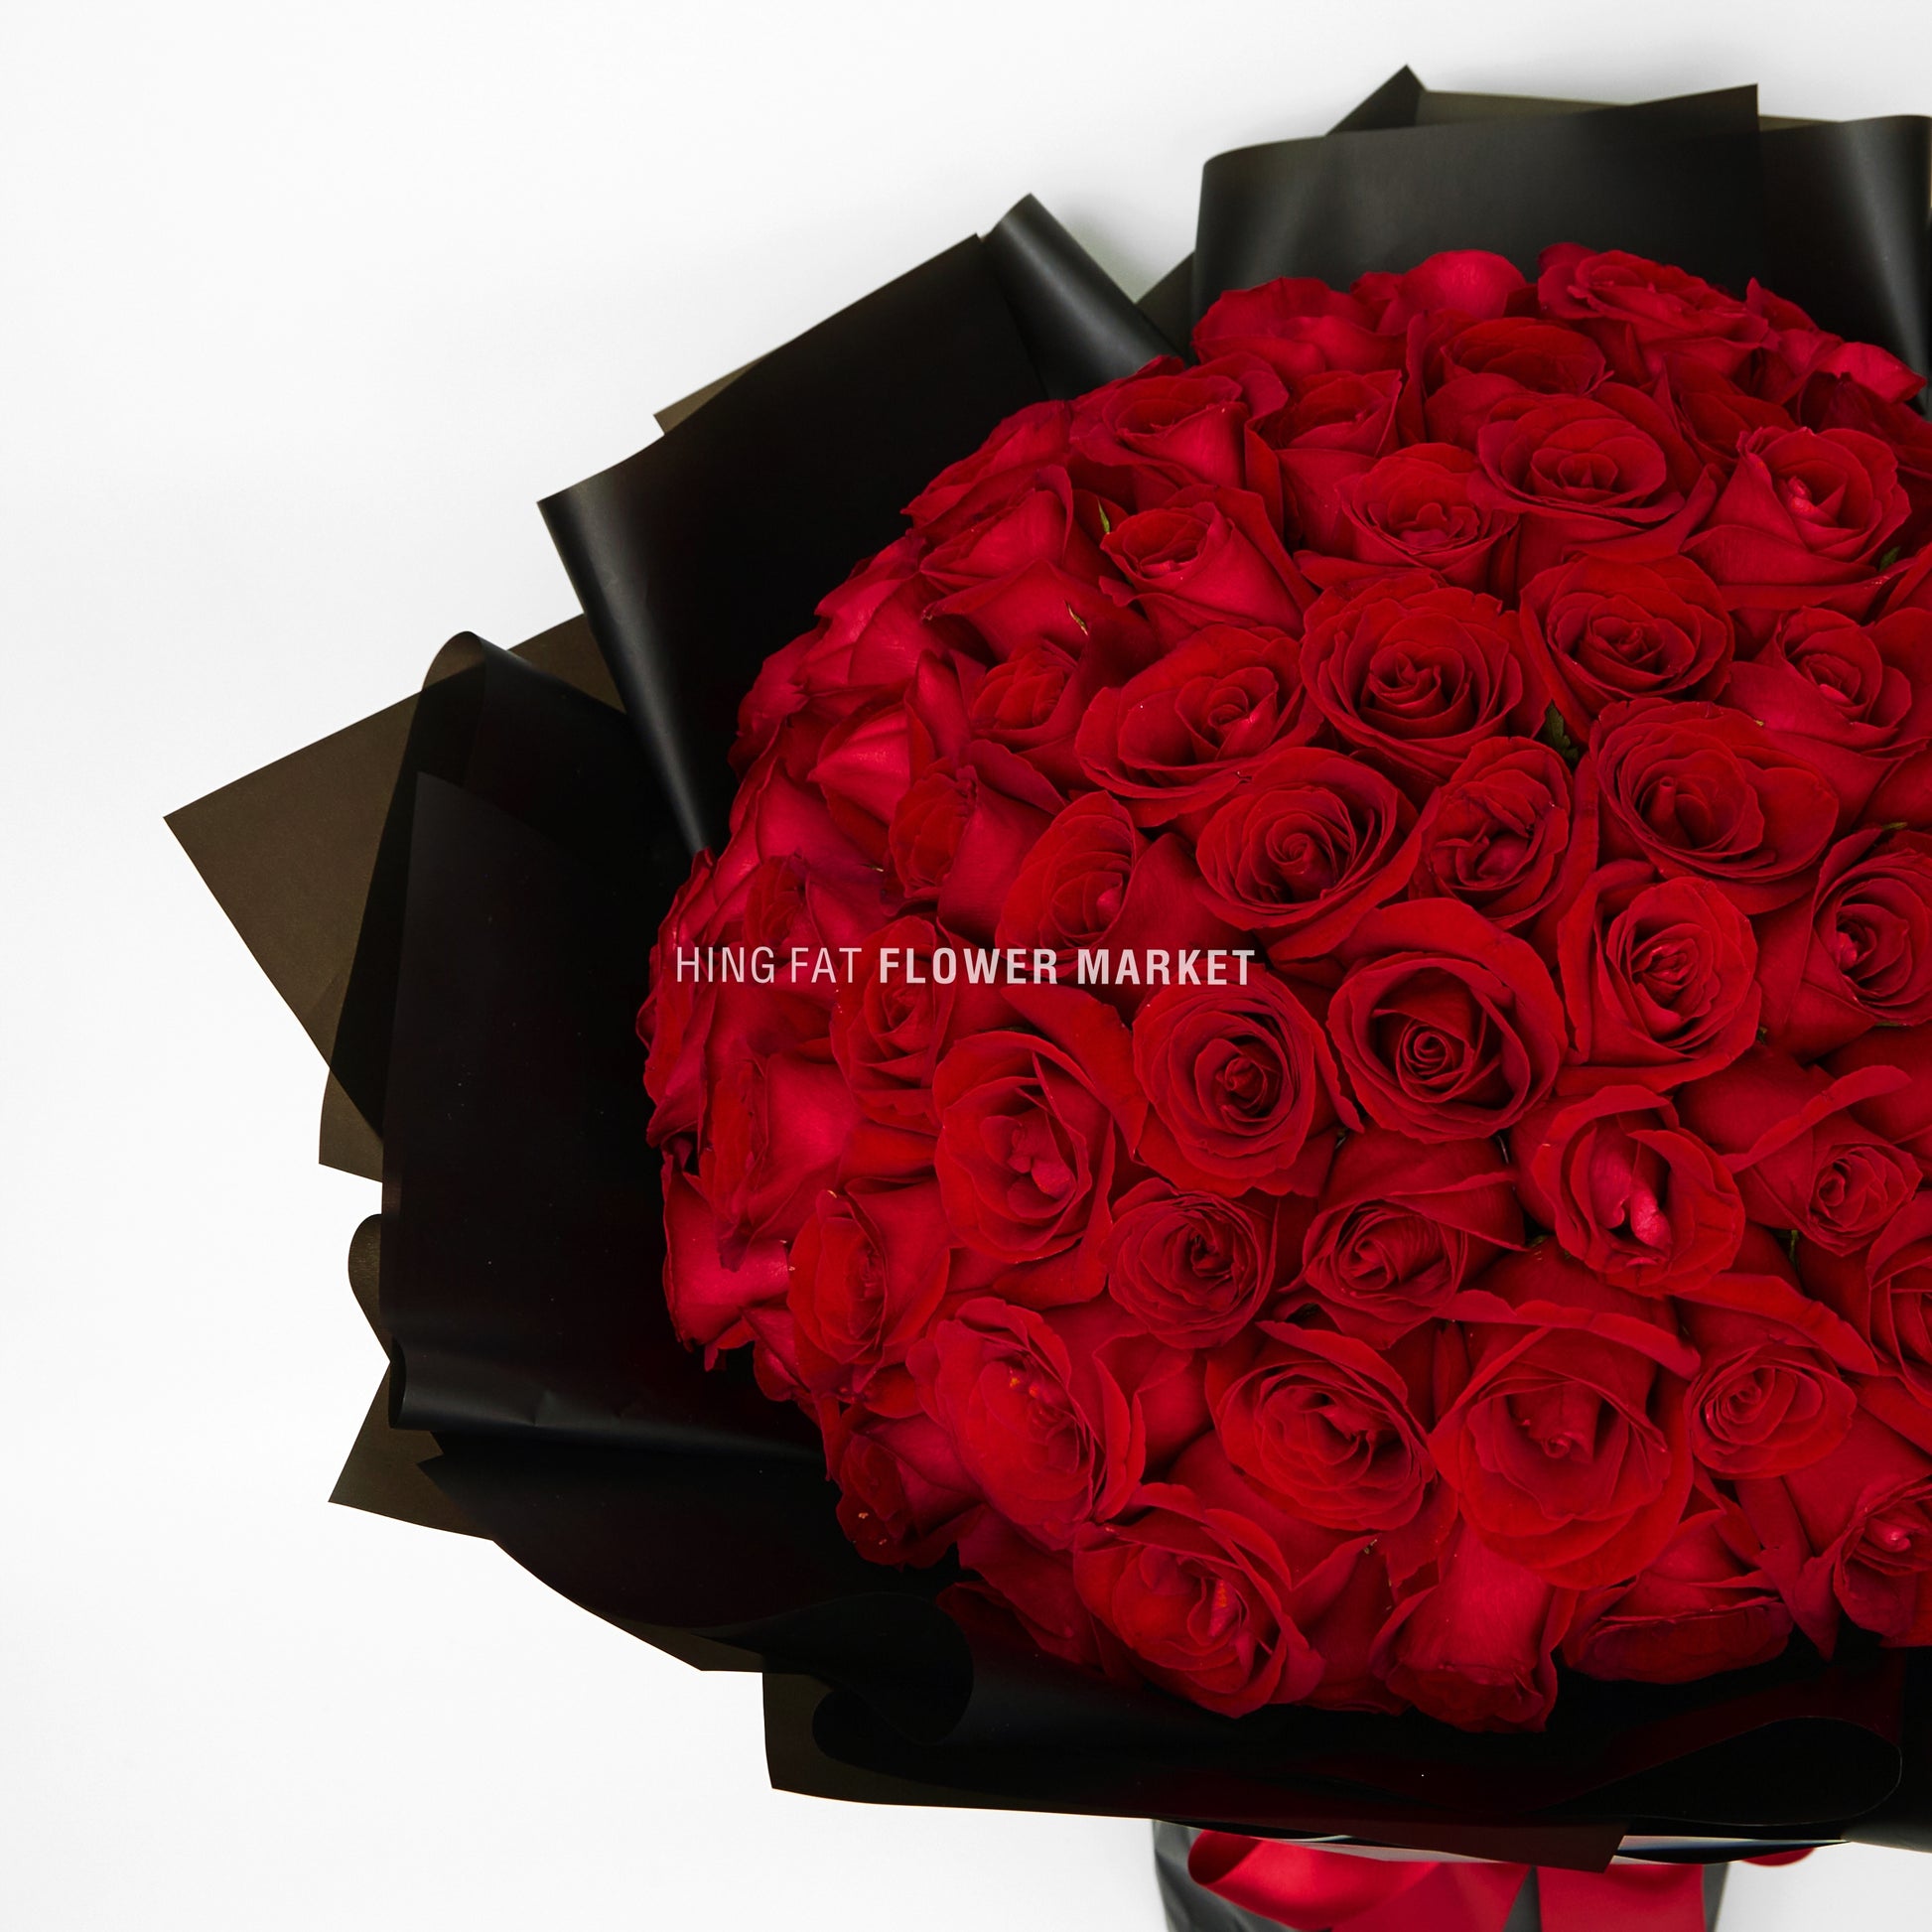 99支玫瑰花束 99 stmes of red rose bouquet